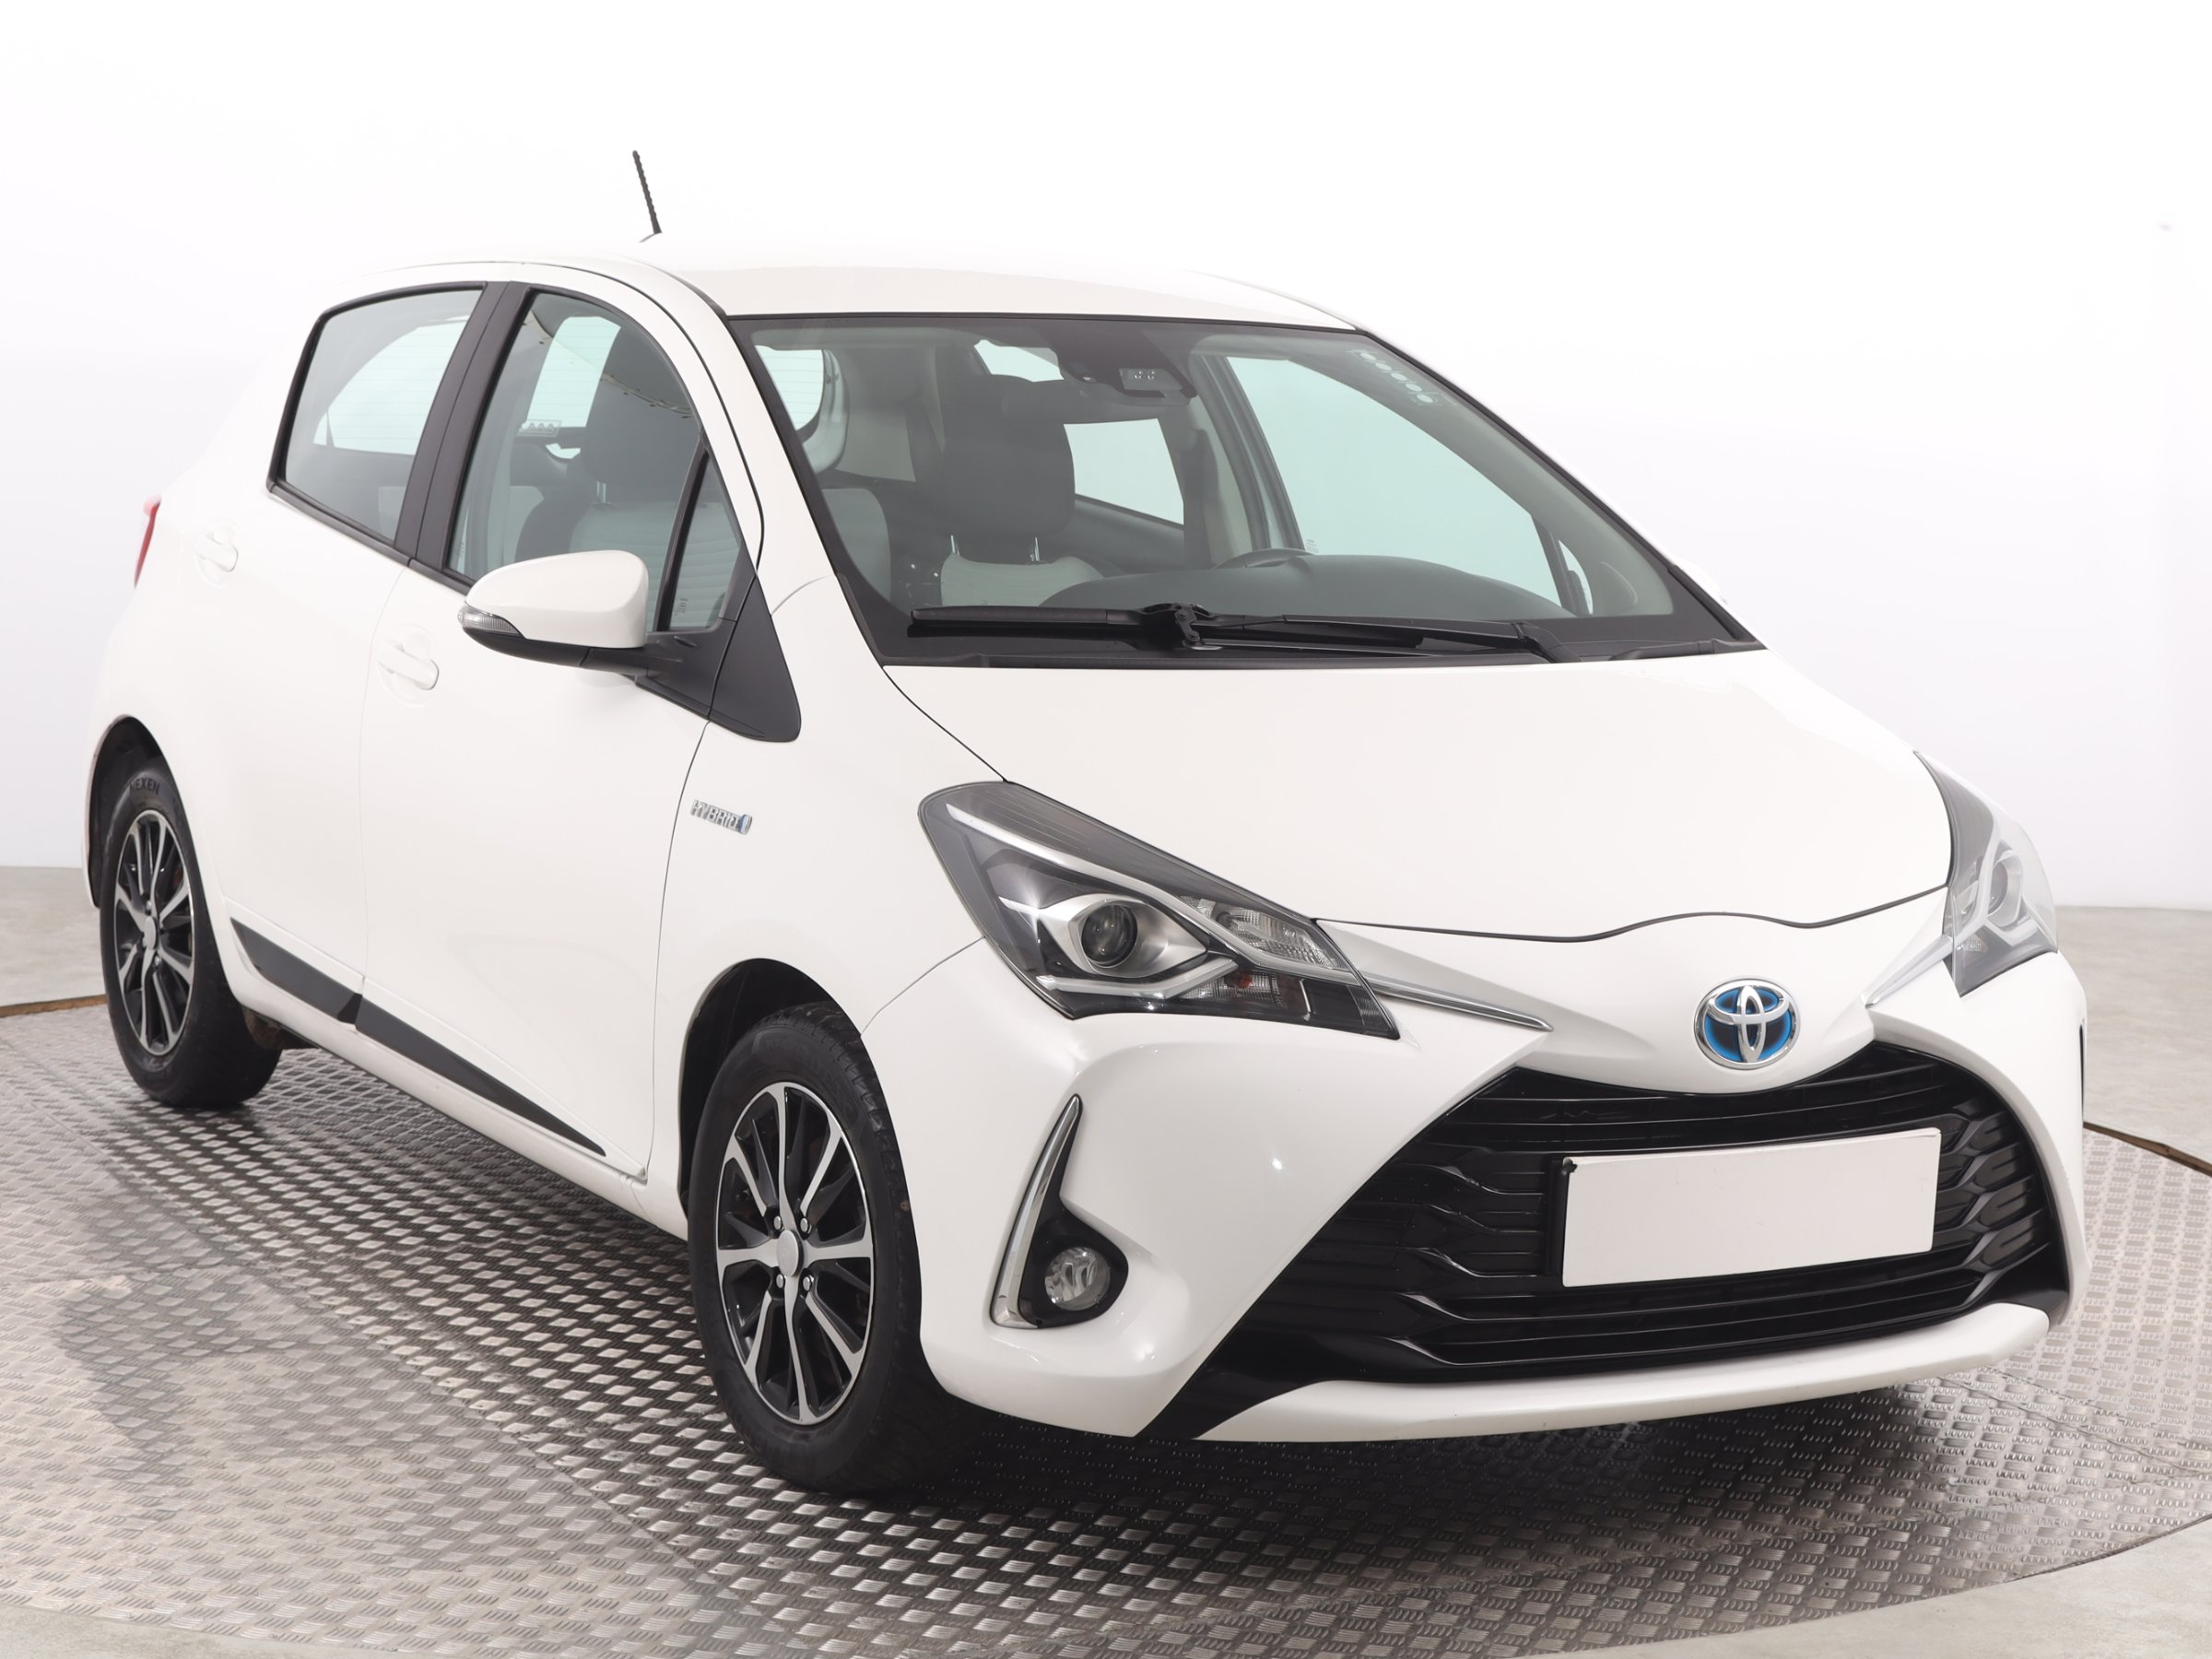 Toyota Yaris 1.5 VVT-i Hybrid Hatchback 2018 - 1